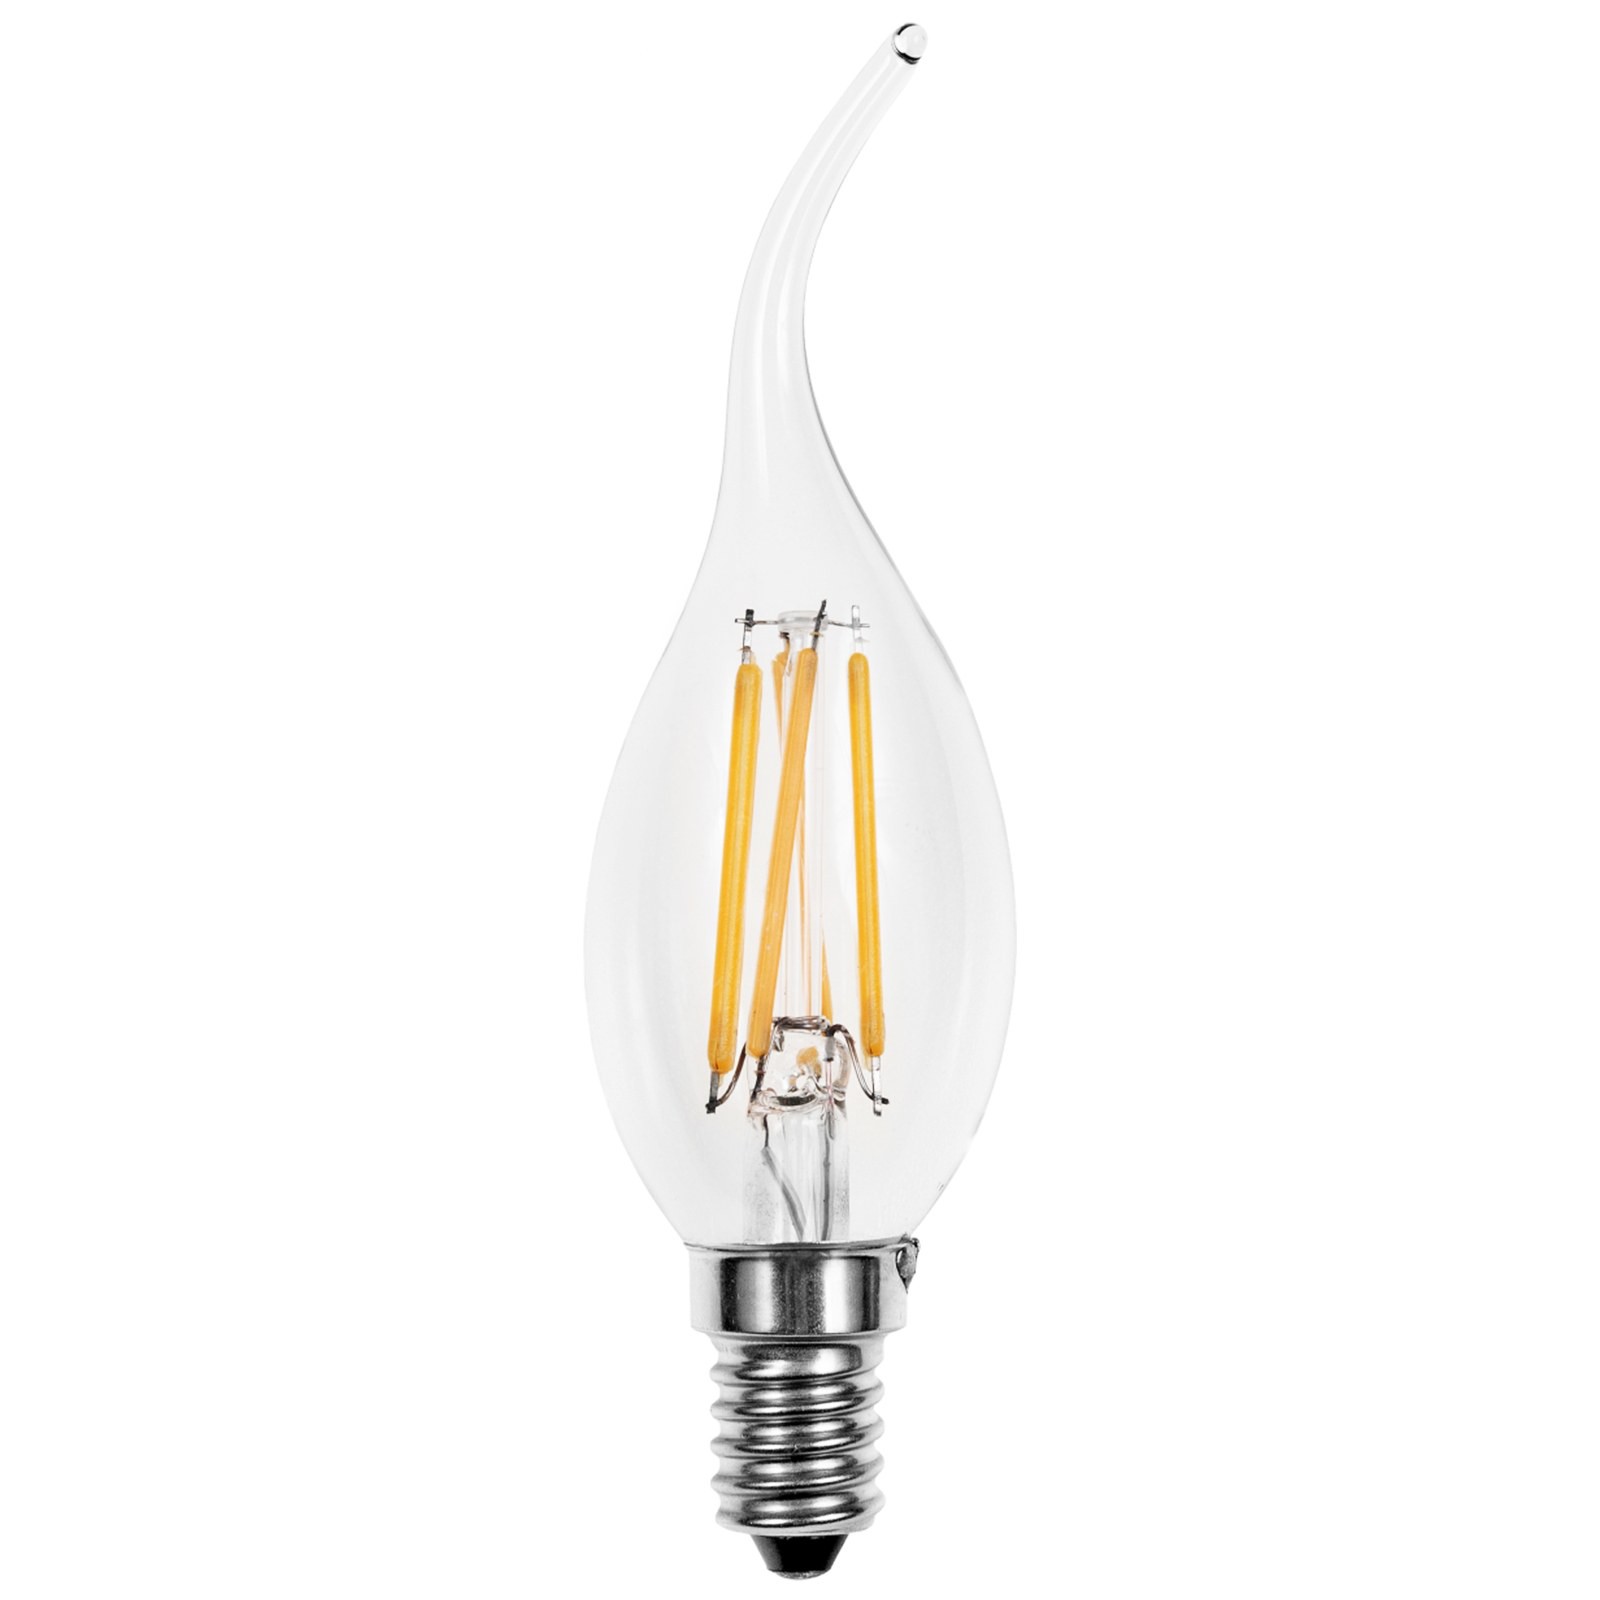 Lampada led lampadina filamento attacco e14 light a for Lampadine led 4 watt